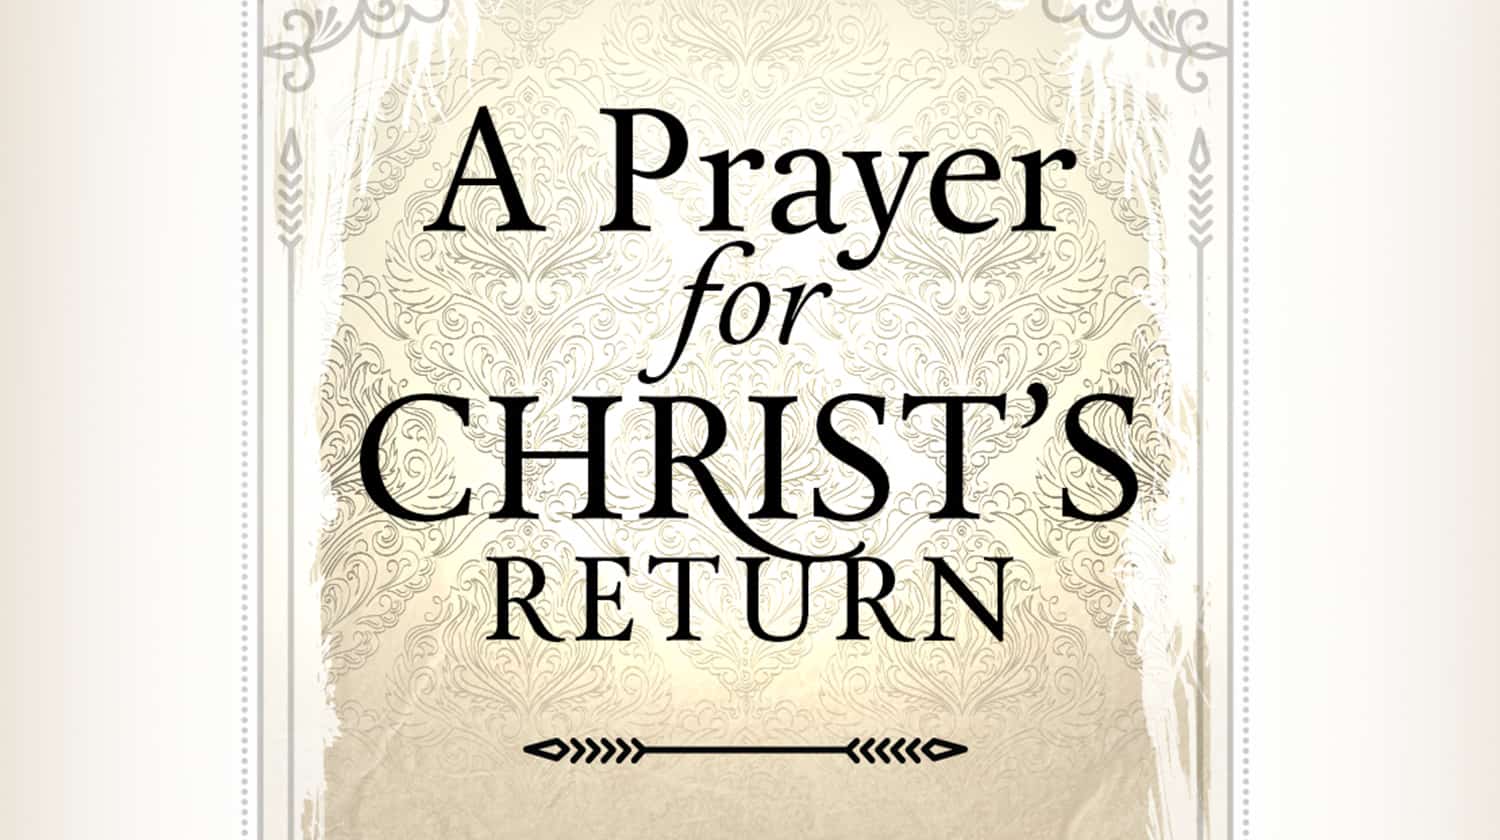 A Prayer for Christ’s Return